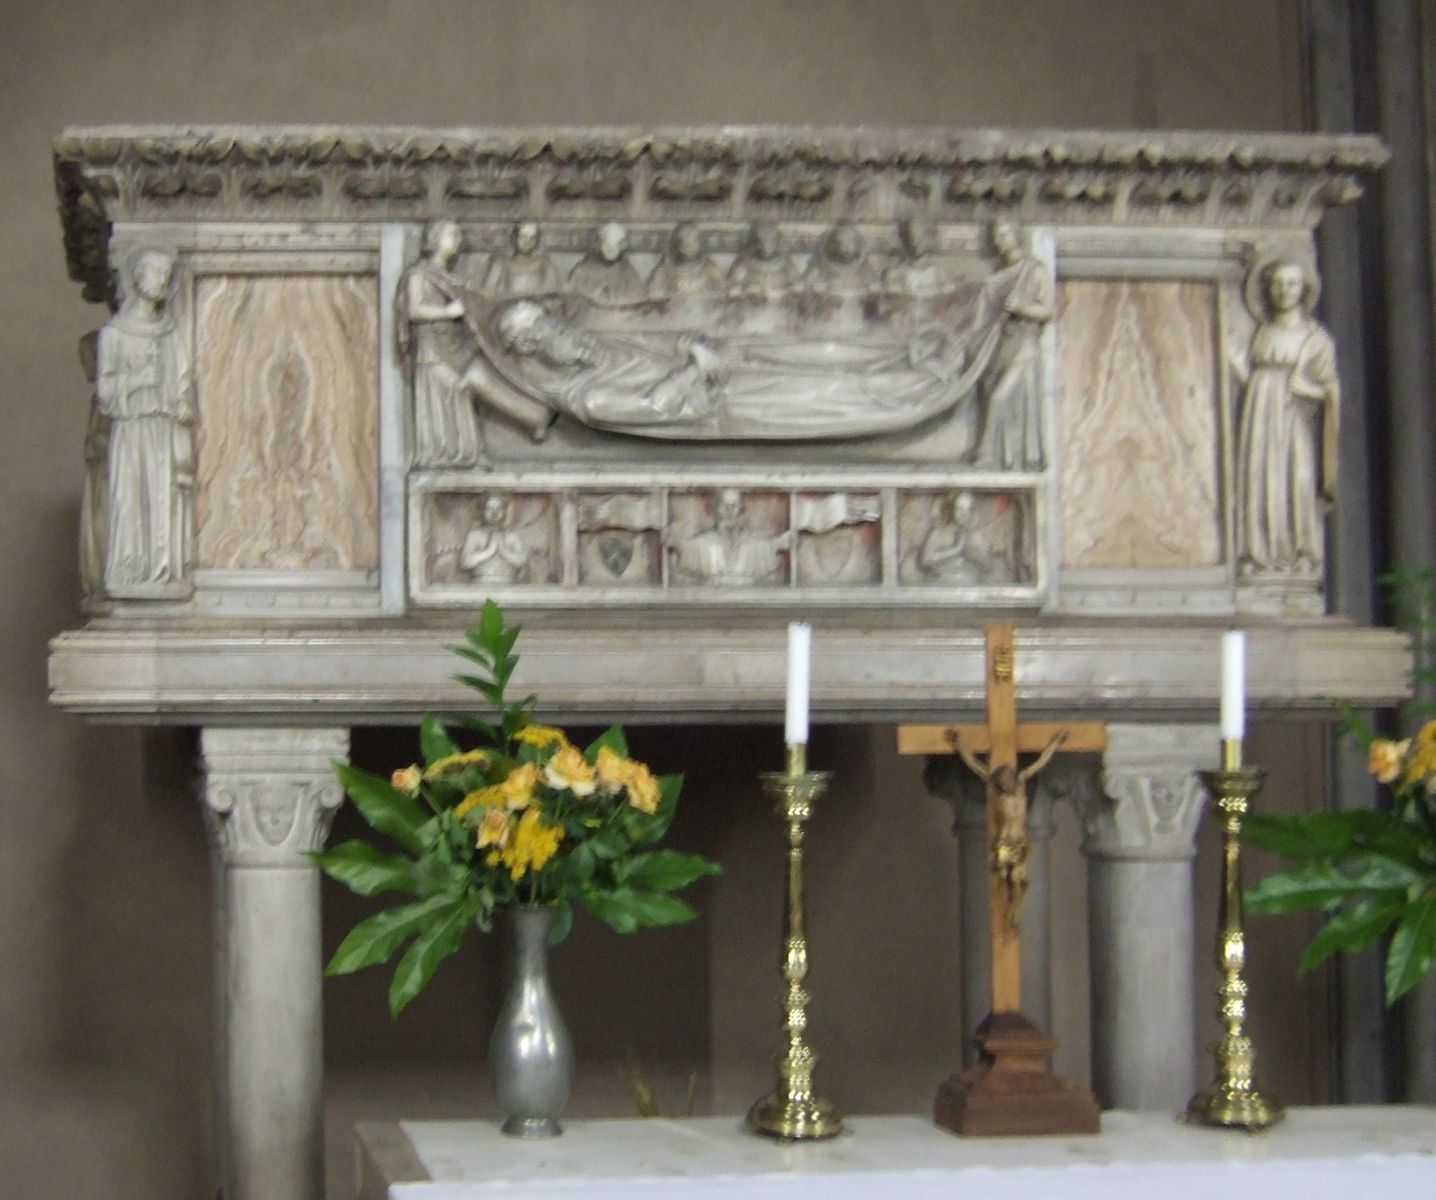 Oderichs Sarkophag, 1331/1332, restauriert durch den Architekten Cesare Miani, in der Kirche Beata Vergine del Carmine in Udine